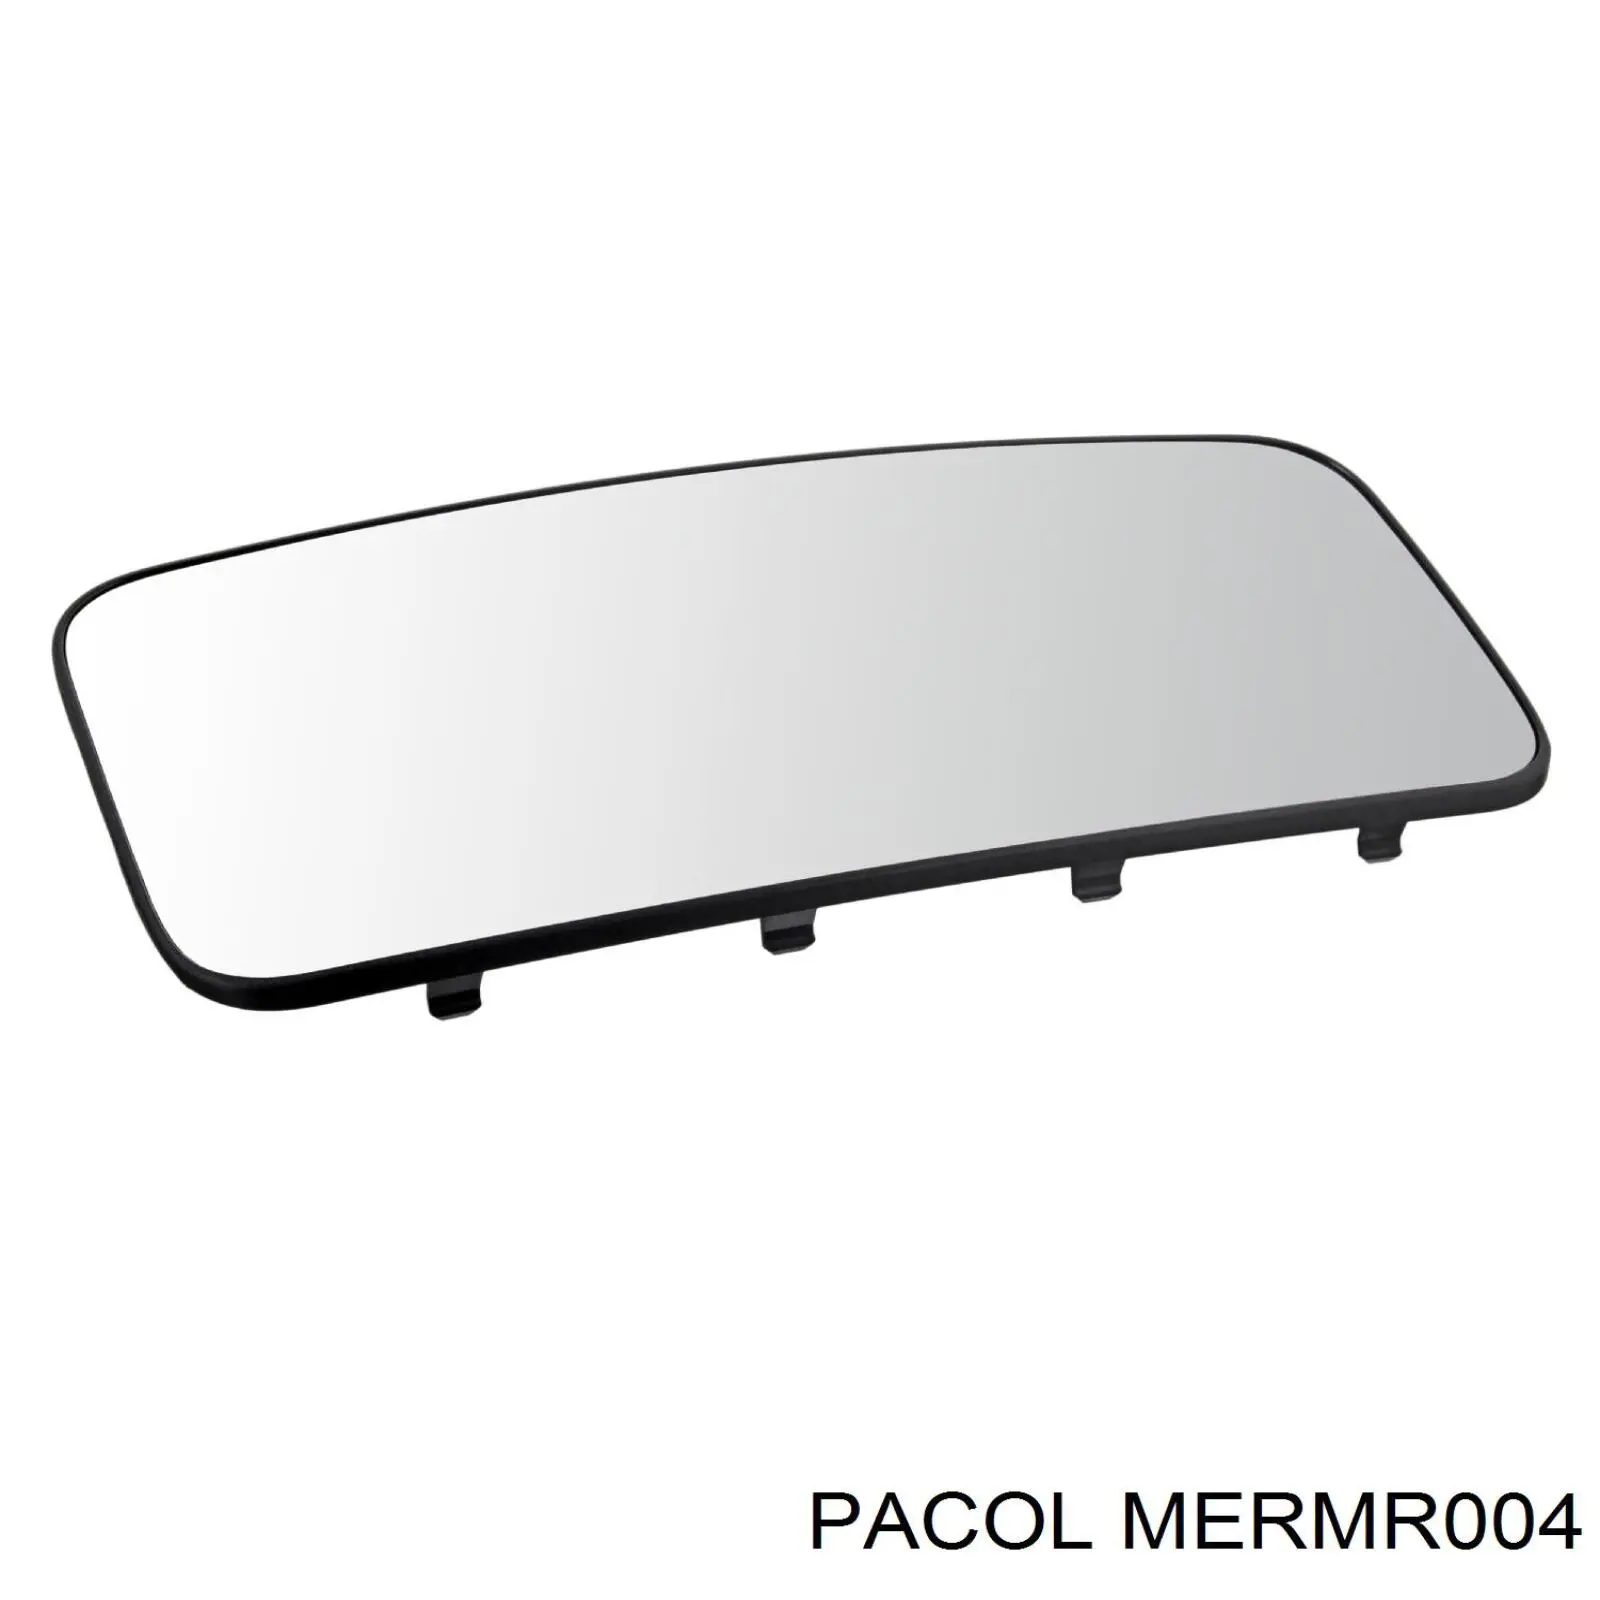 A0028114633 Mercedes elemento para espejo retrovisor